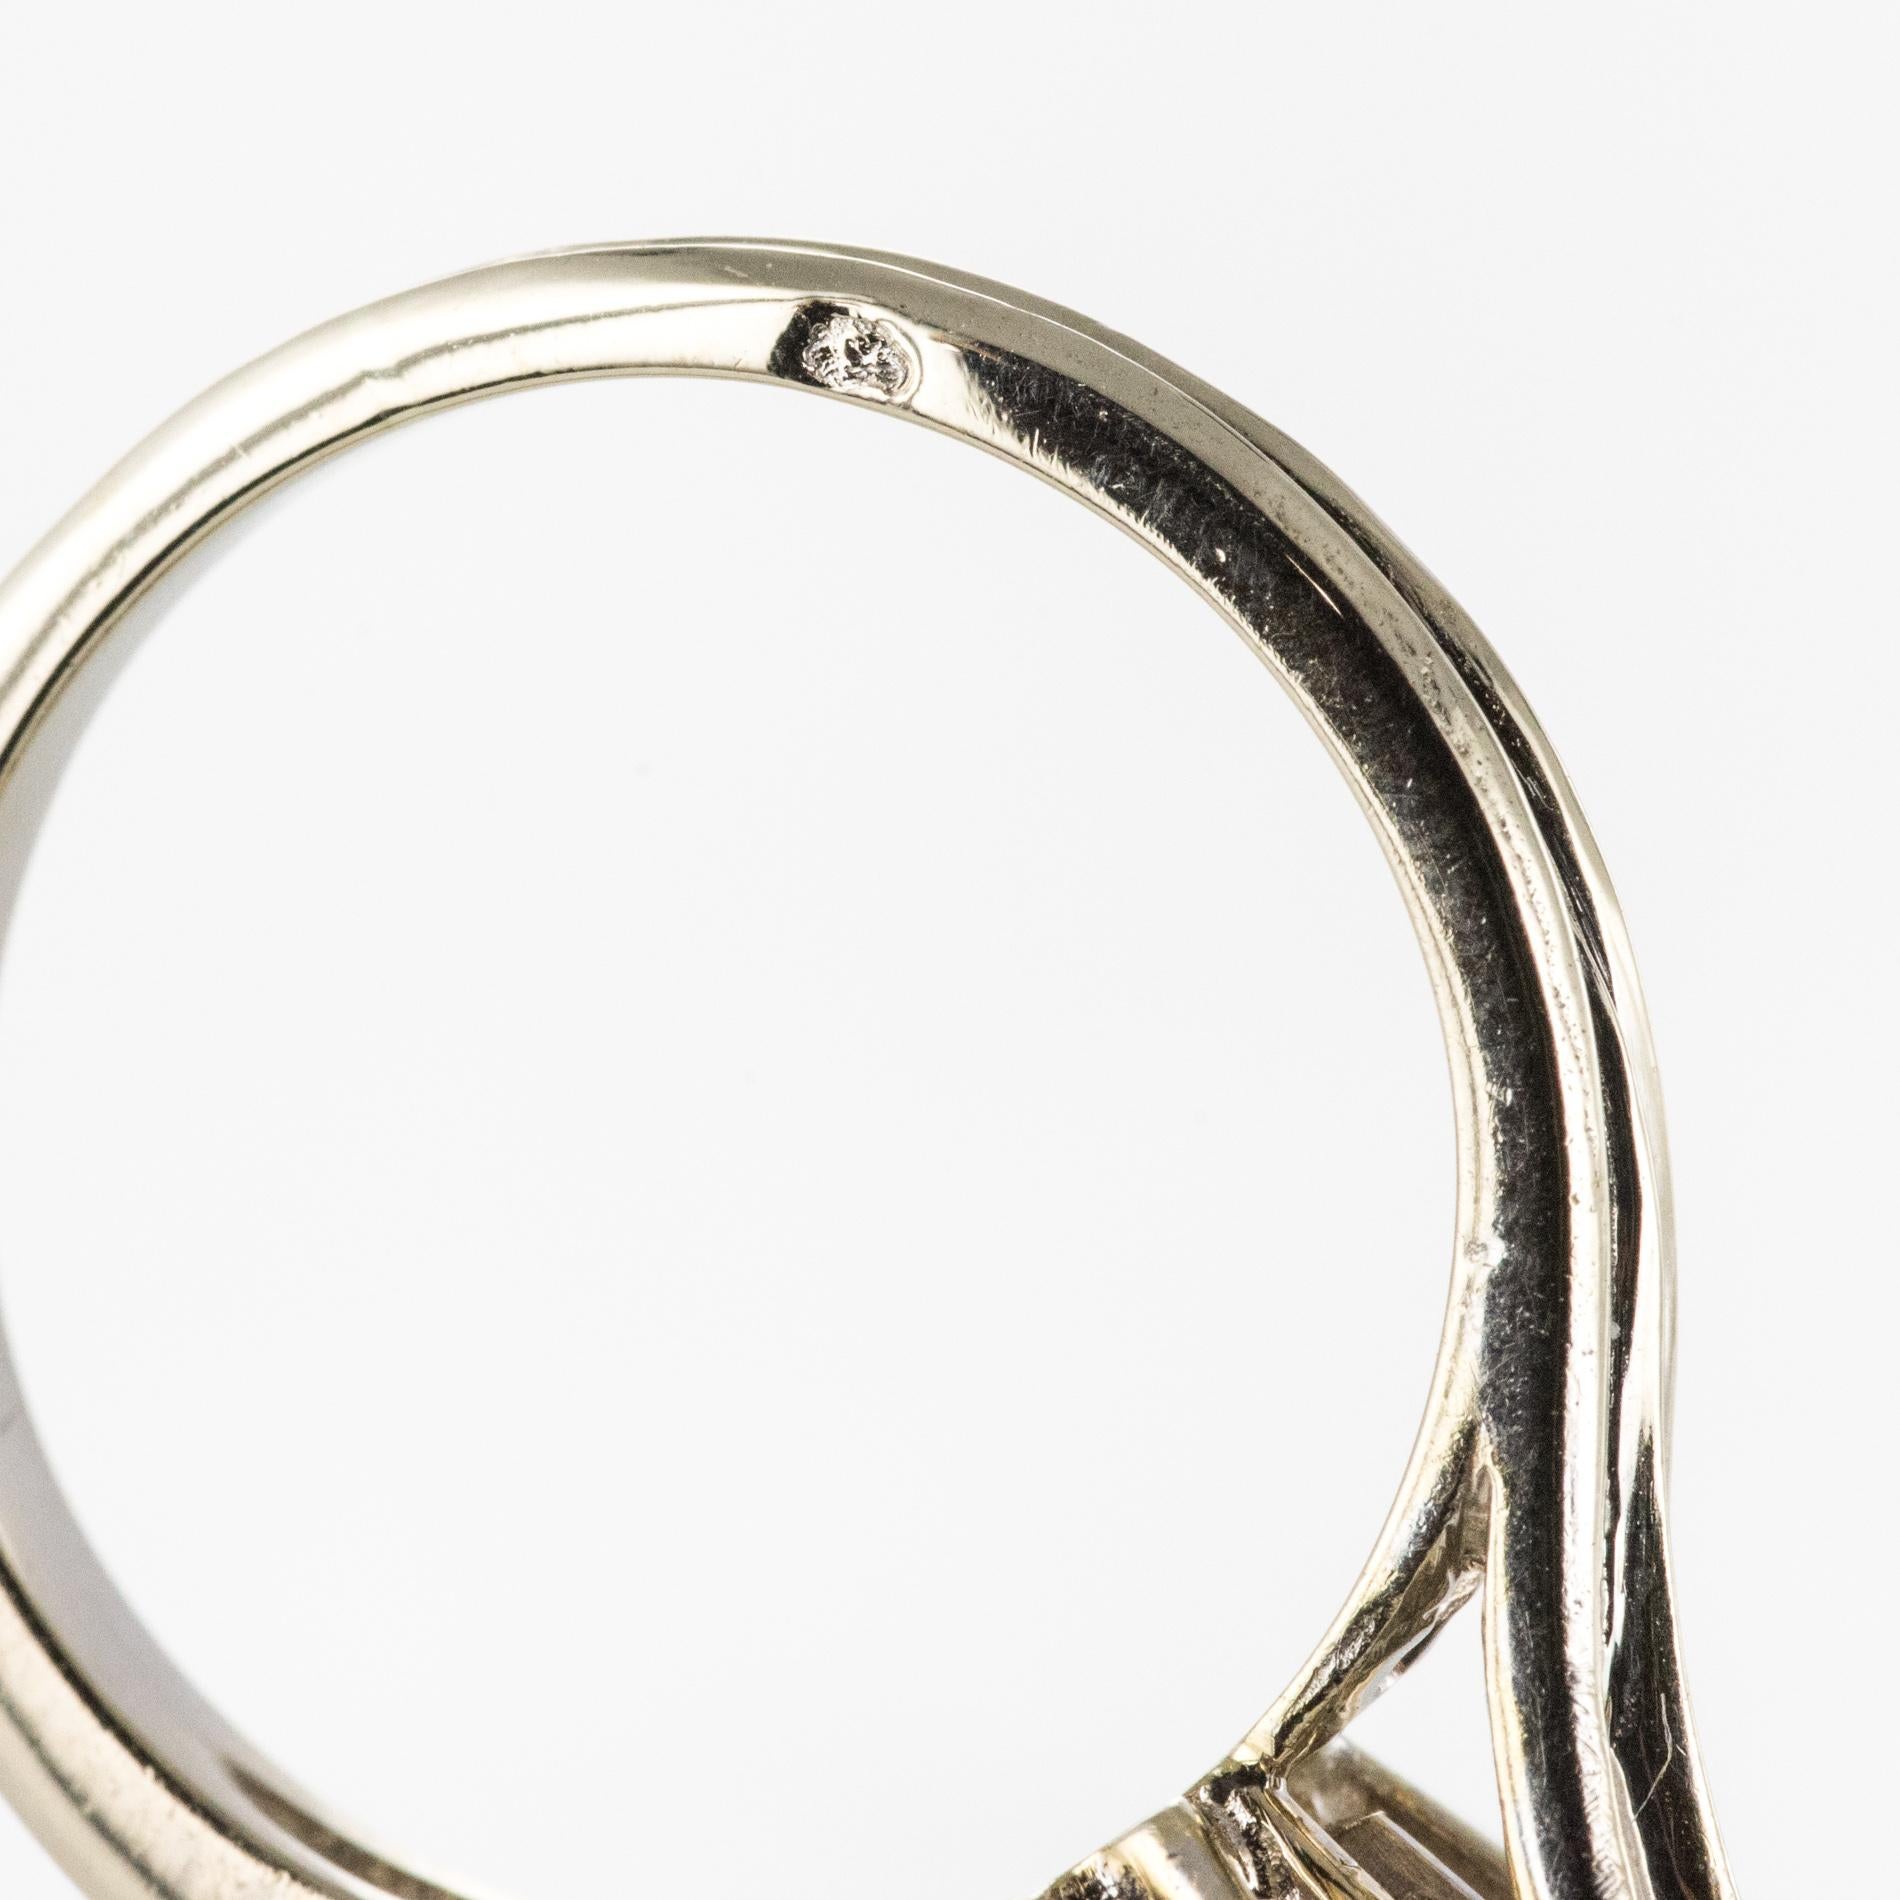 French 1960s 9 Carat Aquamarine Claws Set 18 Karat White Gold Ring 8